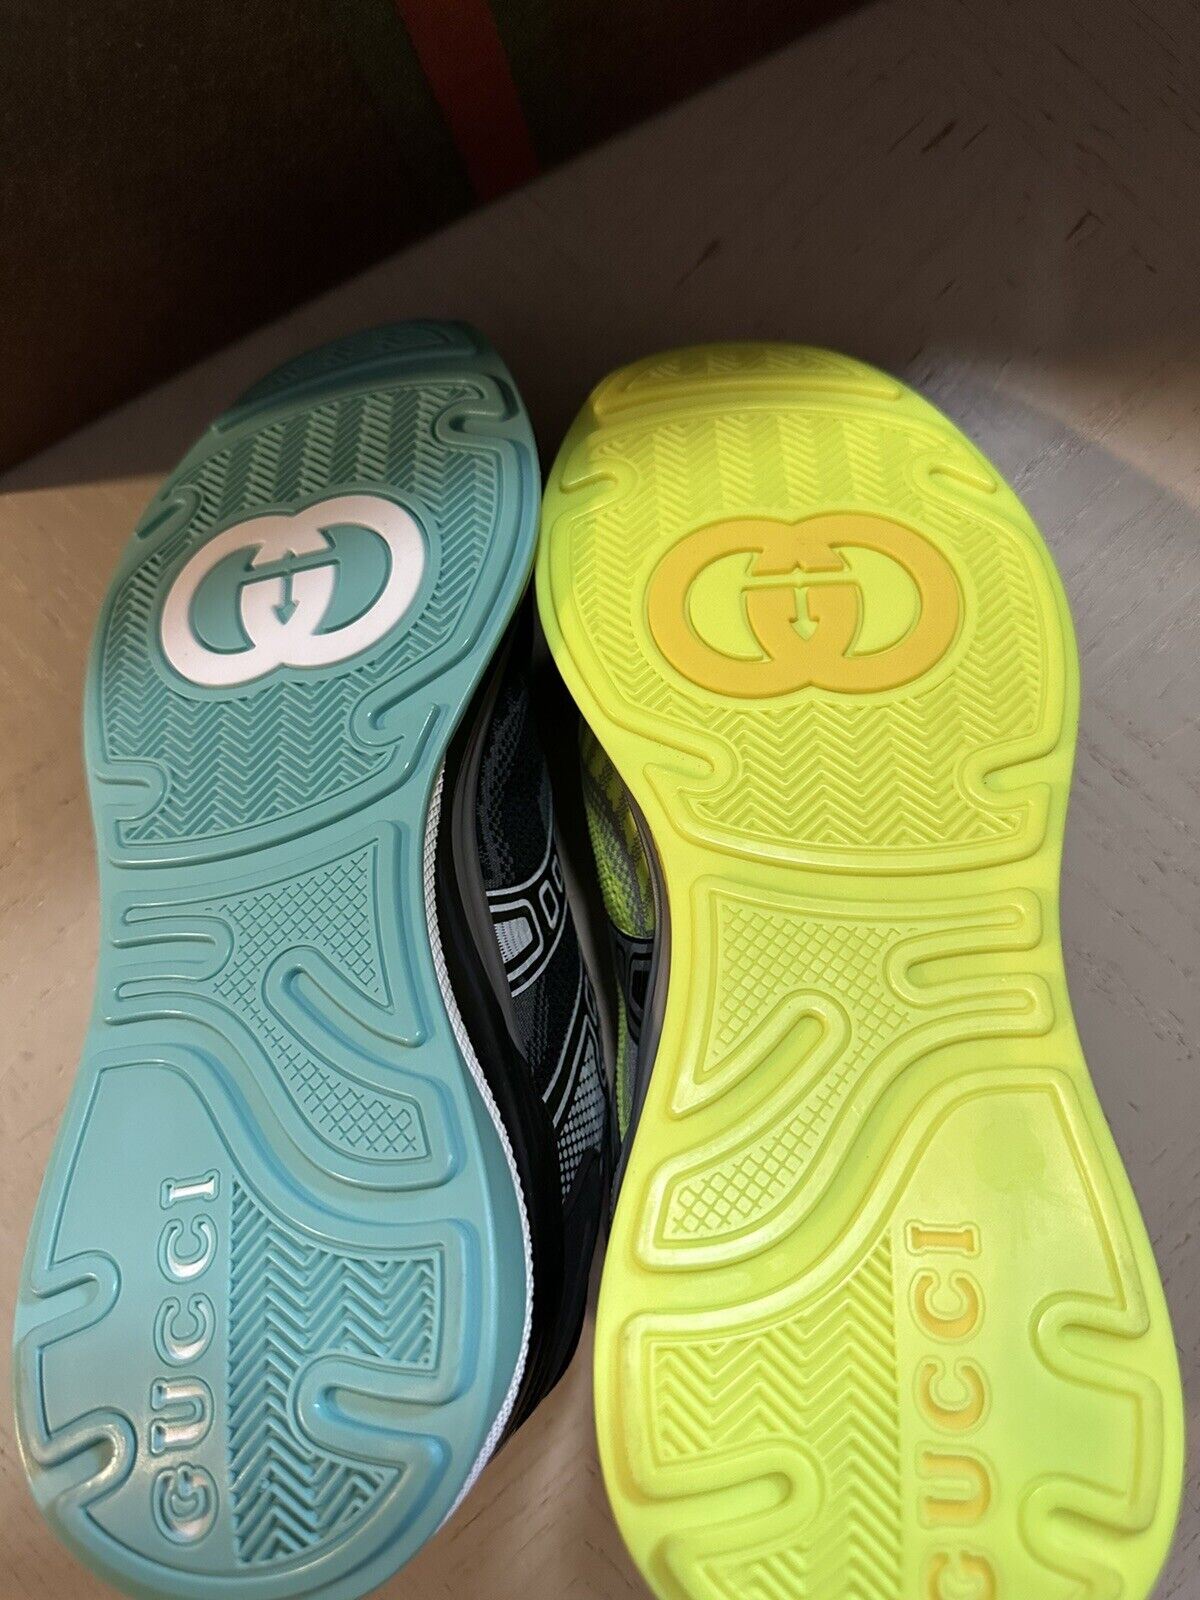 Neue Gucci Damen Ultrapace Two-Tone Sneakers Schuhe Schwarz/Gelb 6,5 US/36,5 Eu